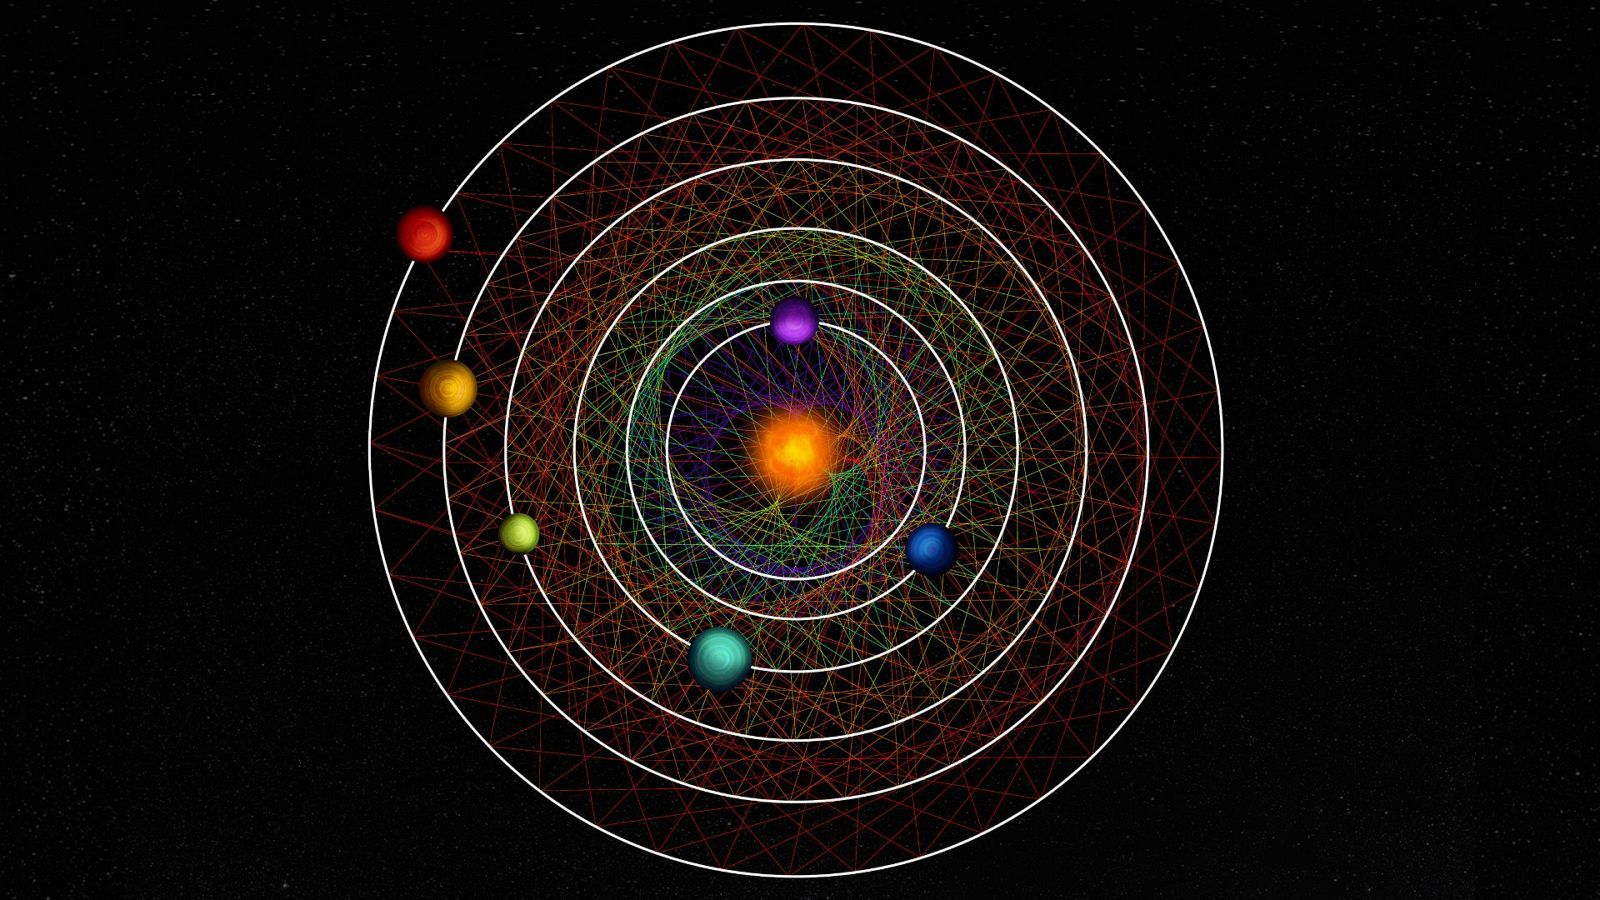 Descubren un sistema solar de seis planetas que orbitan sincronizados: "Es muy raro en el universo"